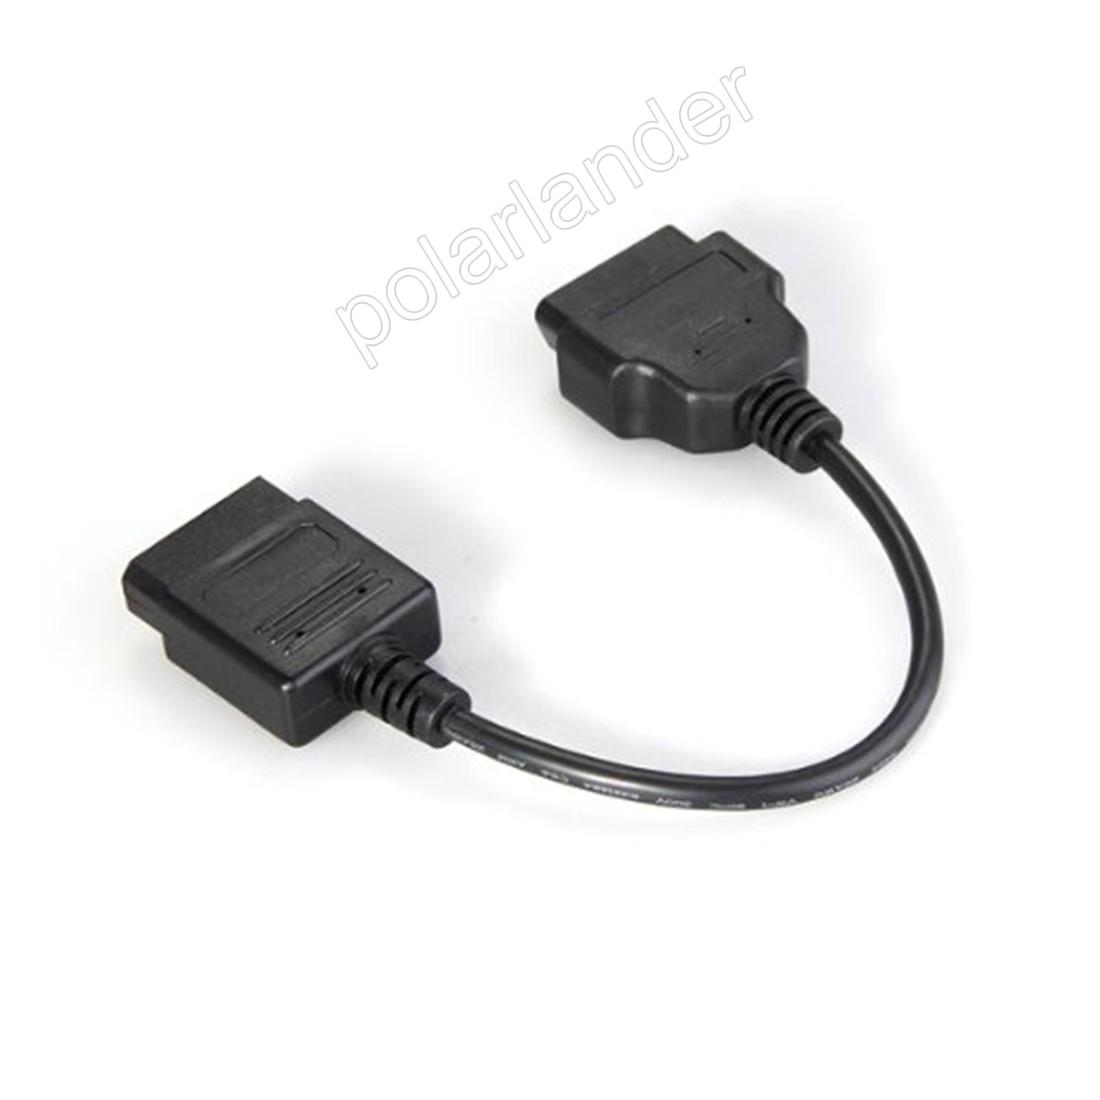 Изображение товара: 14 Pin к 16 Pin OBD2 интерфейсный адаптер для Ni/ssan диагностический Соединительный адаптер Сканер кабель диагностический кабель Бесплатная доставка